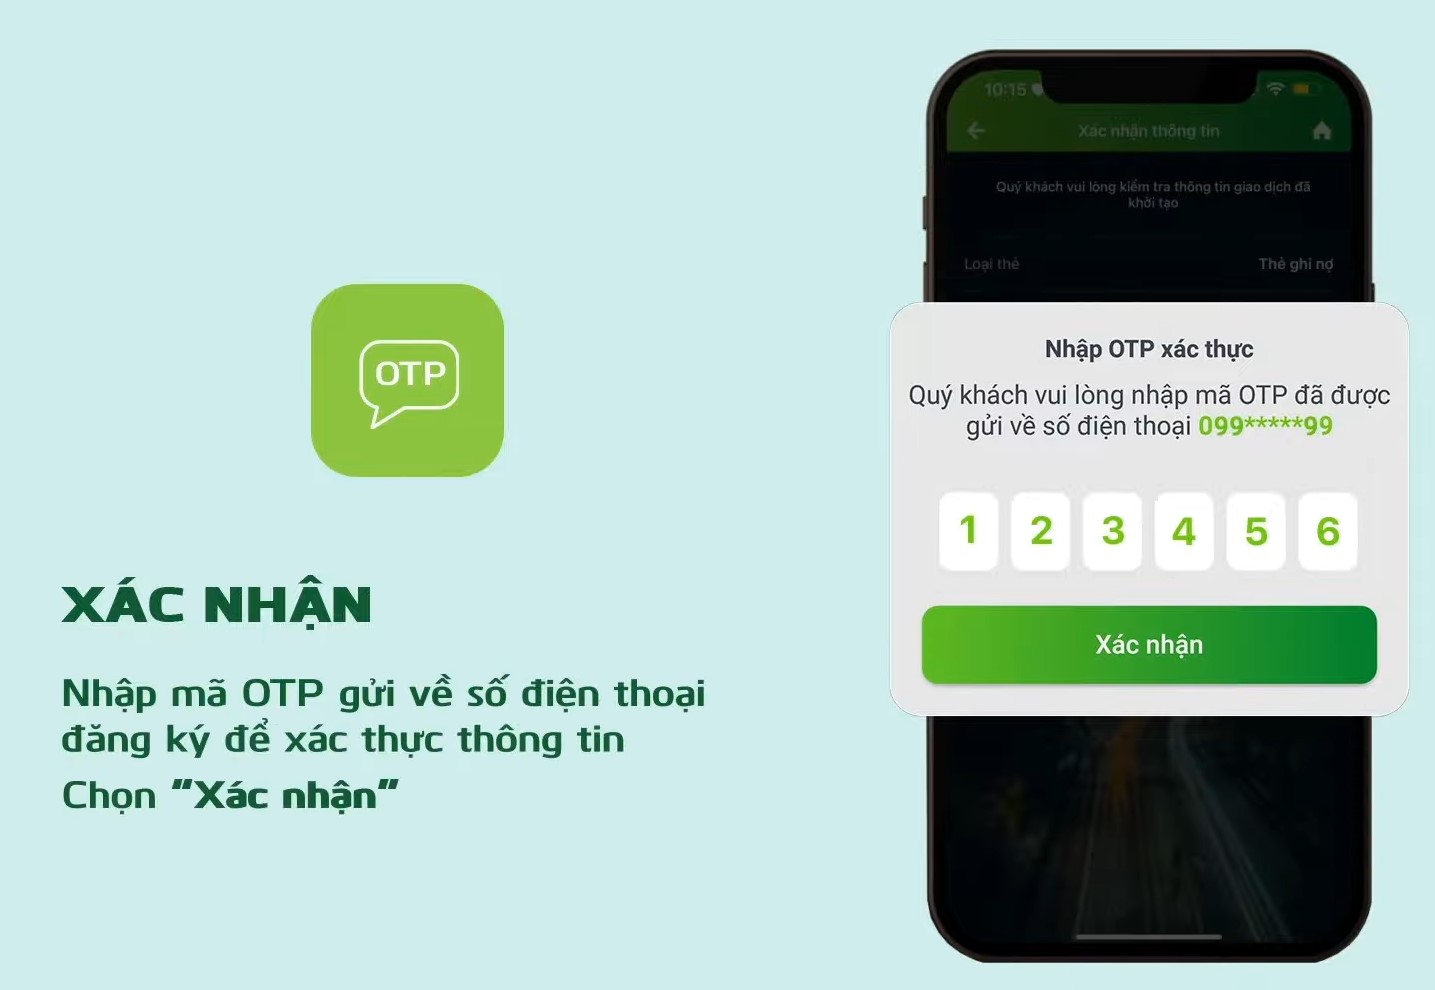 4-cách mở khóa thẻ vietcombank bằng app điện thoại (5)